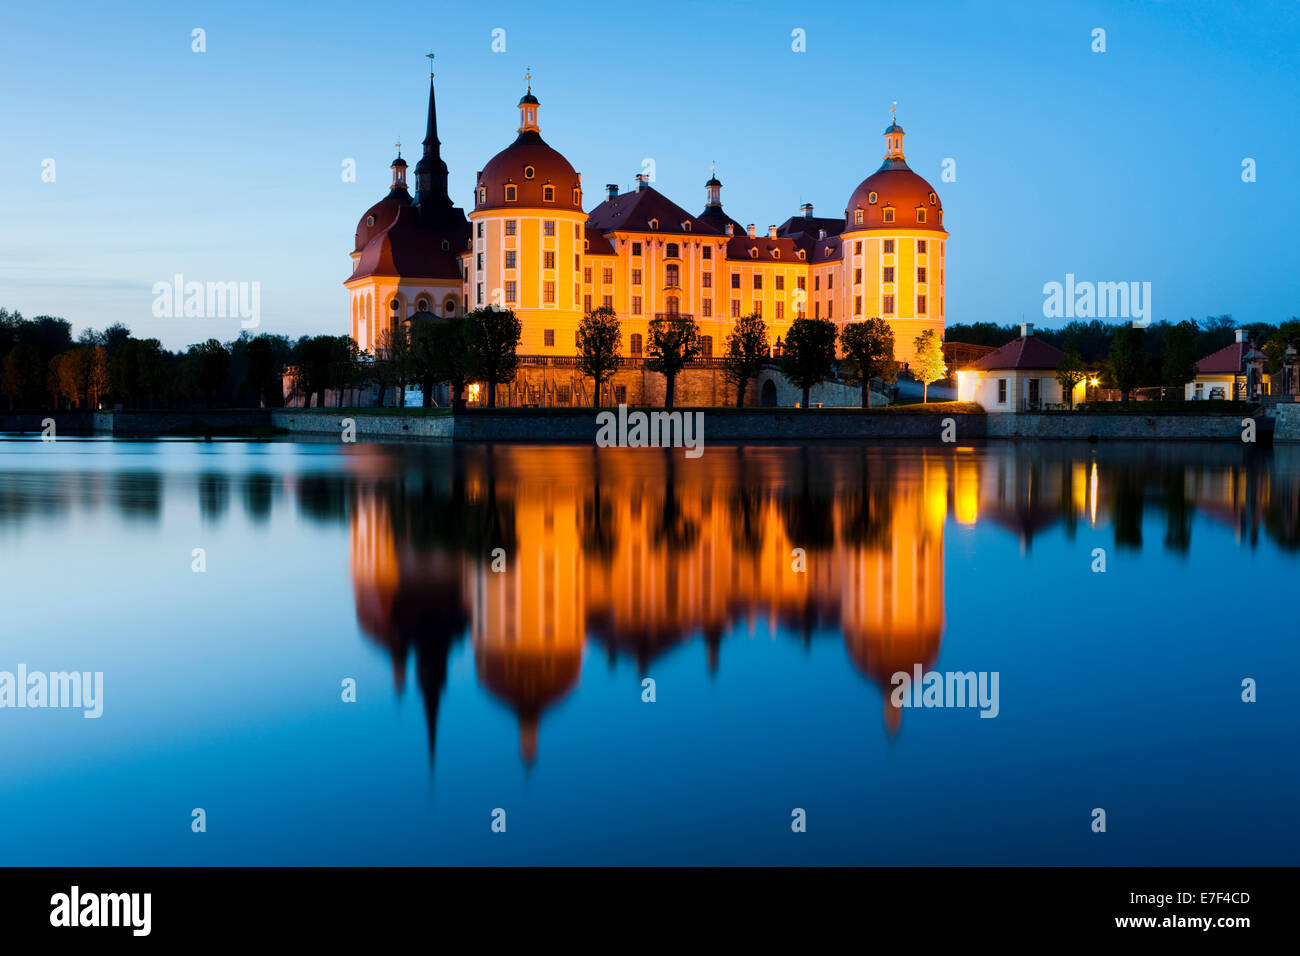 Château de Moritzburg au crépuscule, Dresde, Saxe, Allemagne Banque D'Images